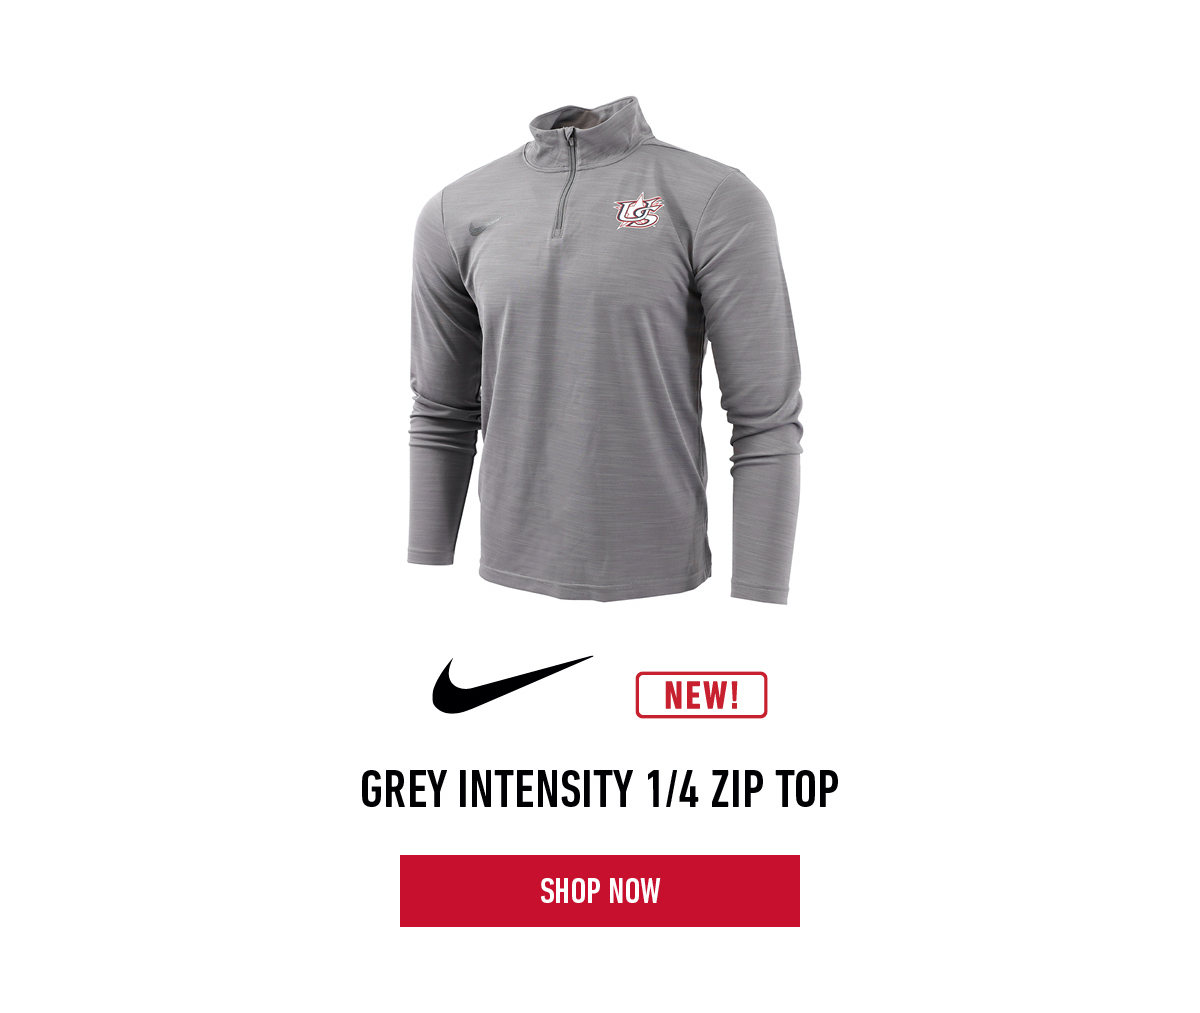 Nike Grey Intensity 1/4 Zip Top